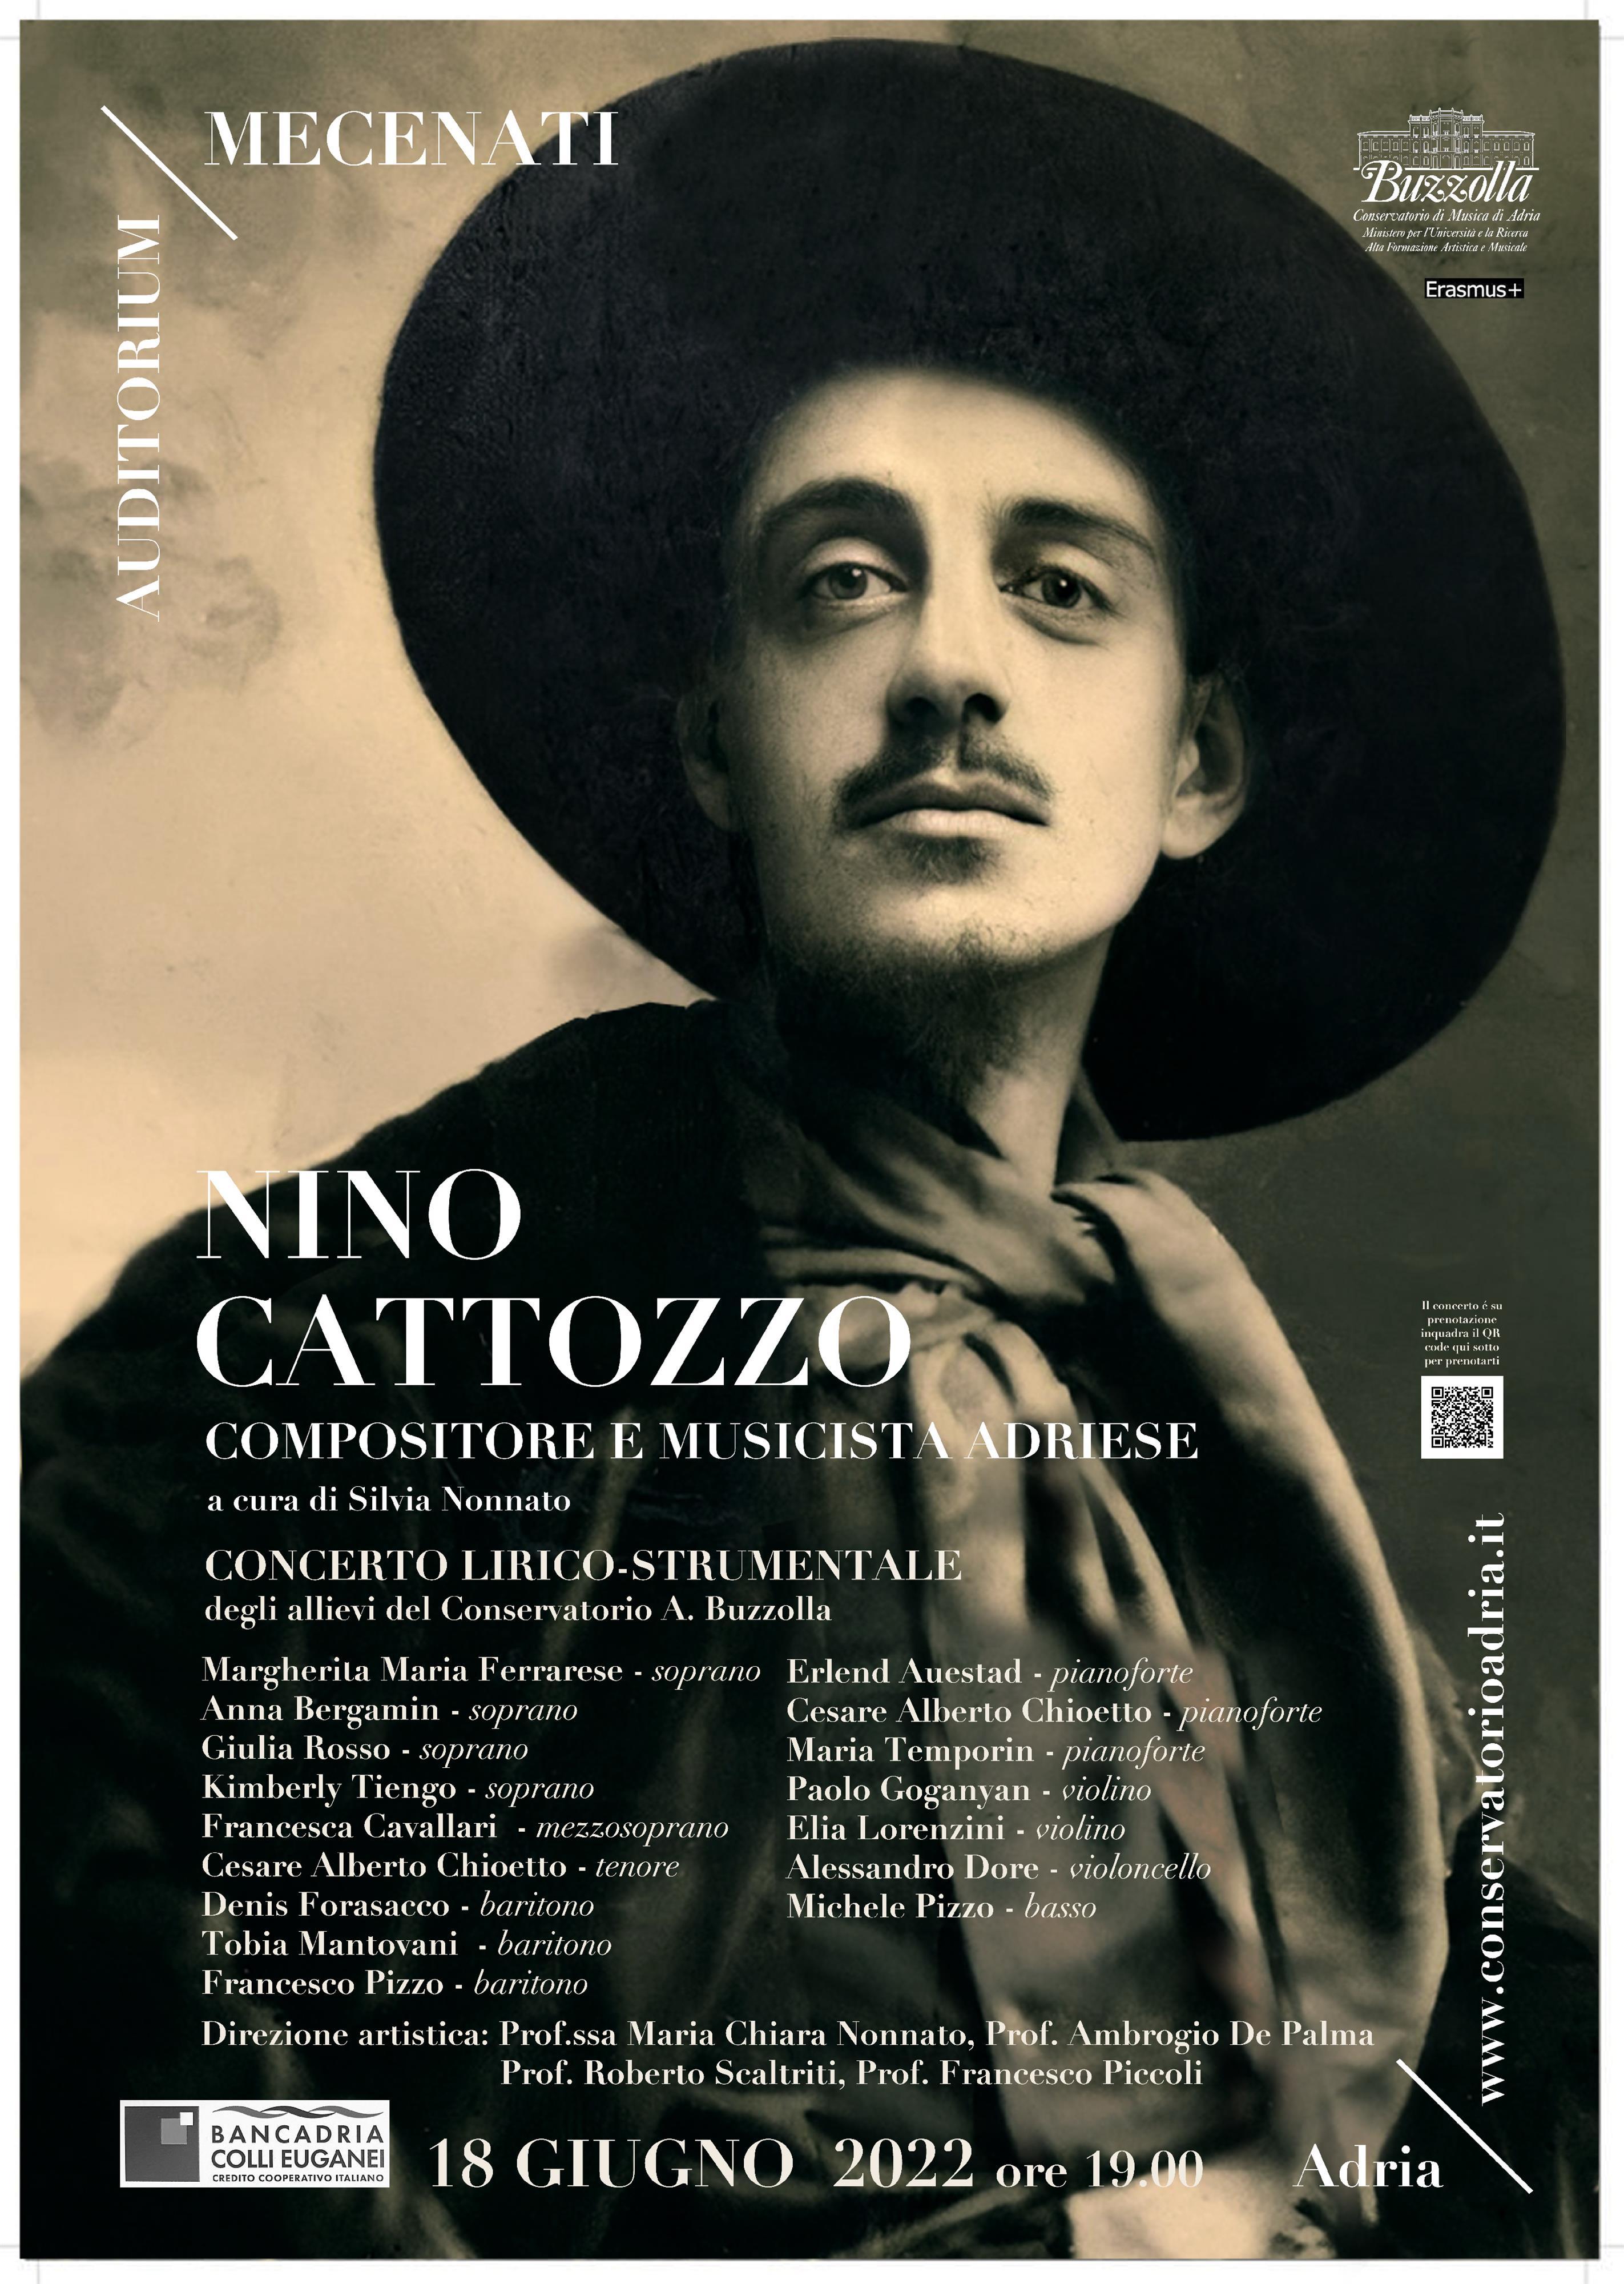 "Nino Cattozzo, compositore e musicista adriese" 